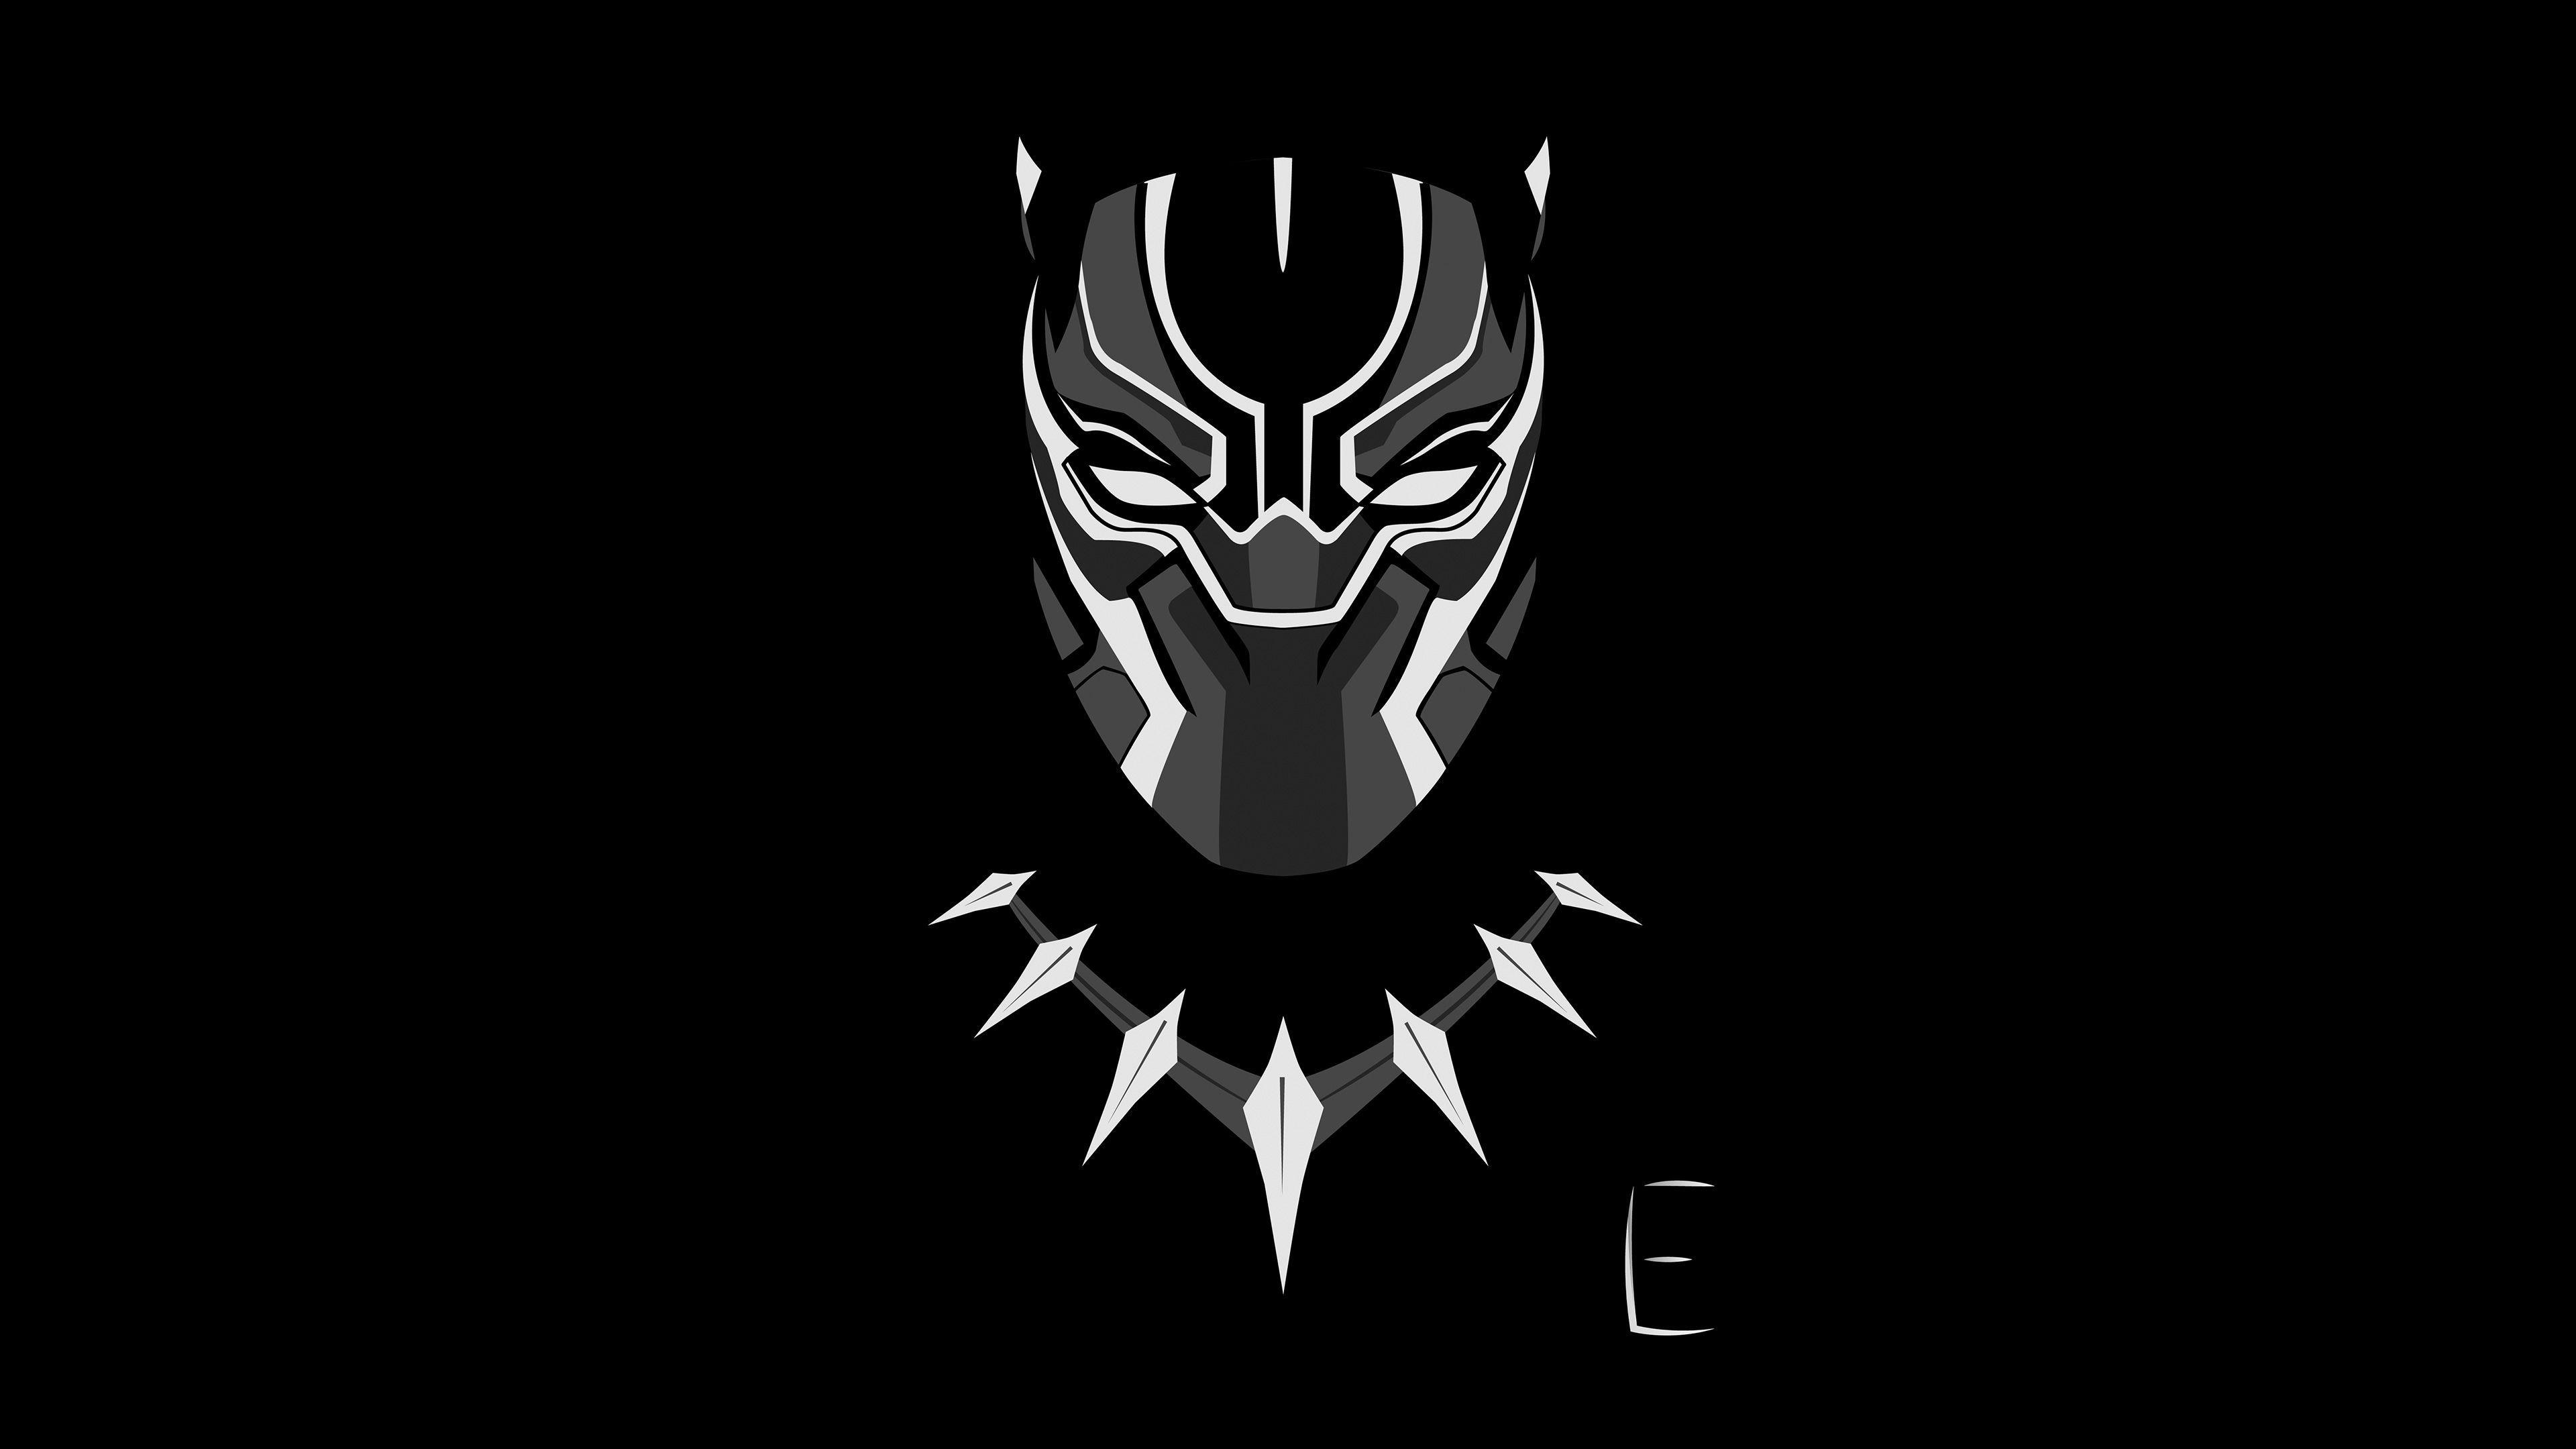 Các fan của Marvel sẽ không thể bỏ qua bức ảnh này! Hãy chiêm ngưỡng vẻ đẹp của Black Panther được thổi hồn vào logo mang tính biểu tượng này. Nét nghệ thuật tinh tế cùng sự nhiệt thành sẽ khiến bạn muốn xem lại liên tục.